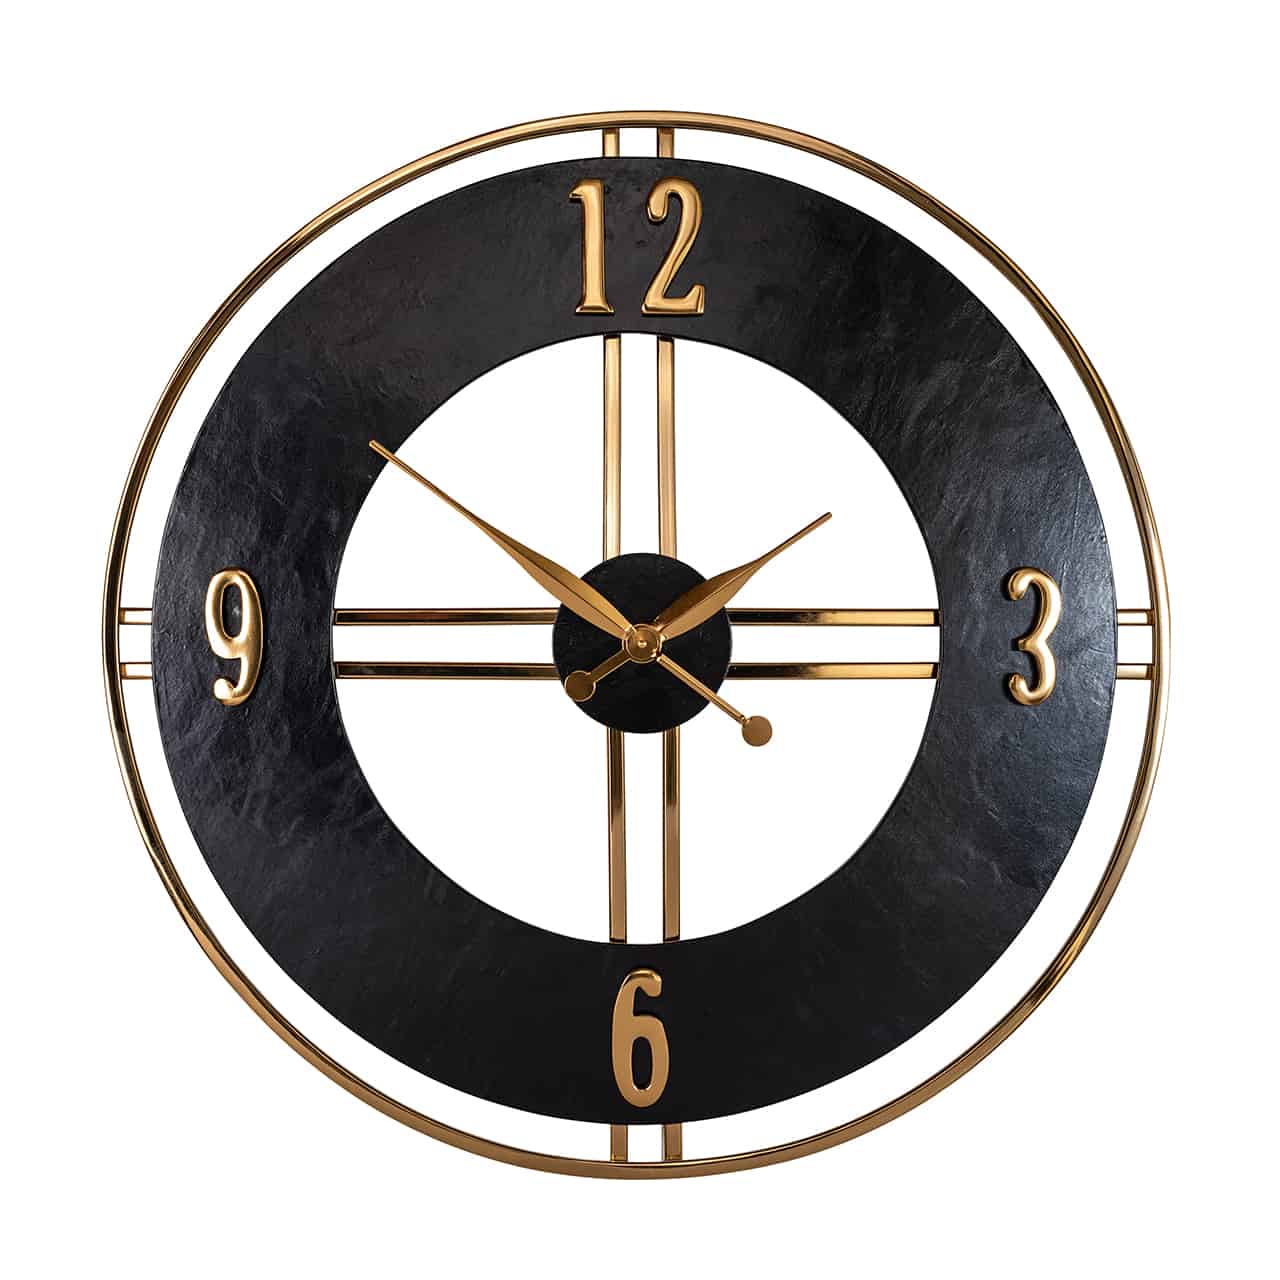 Wanduhr; ein breiter, schwarzer Ring ist mit den Stunden 3-6-9-12 in goldenen Buchstaben beschriftet; in der Mitte ein Kreuz an dem auf einer kleinen, schwarzen Scheibe die spitz zulaufenden Uhrzeiger in gold angebracht sind.